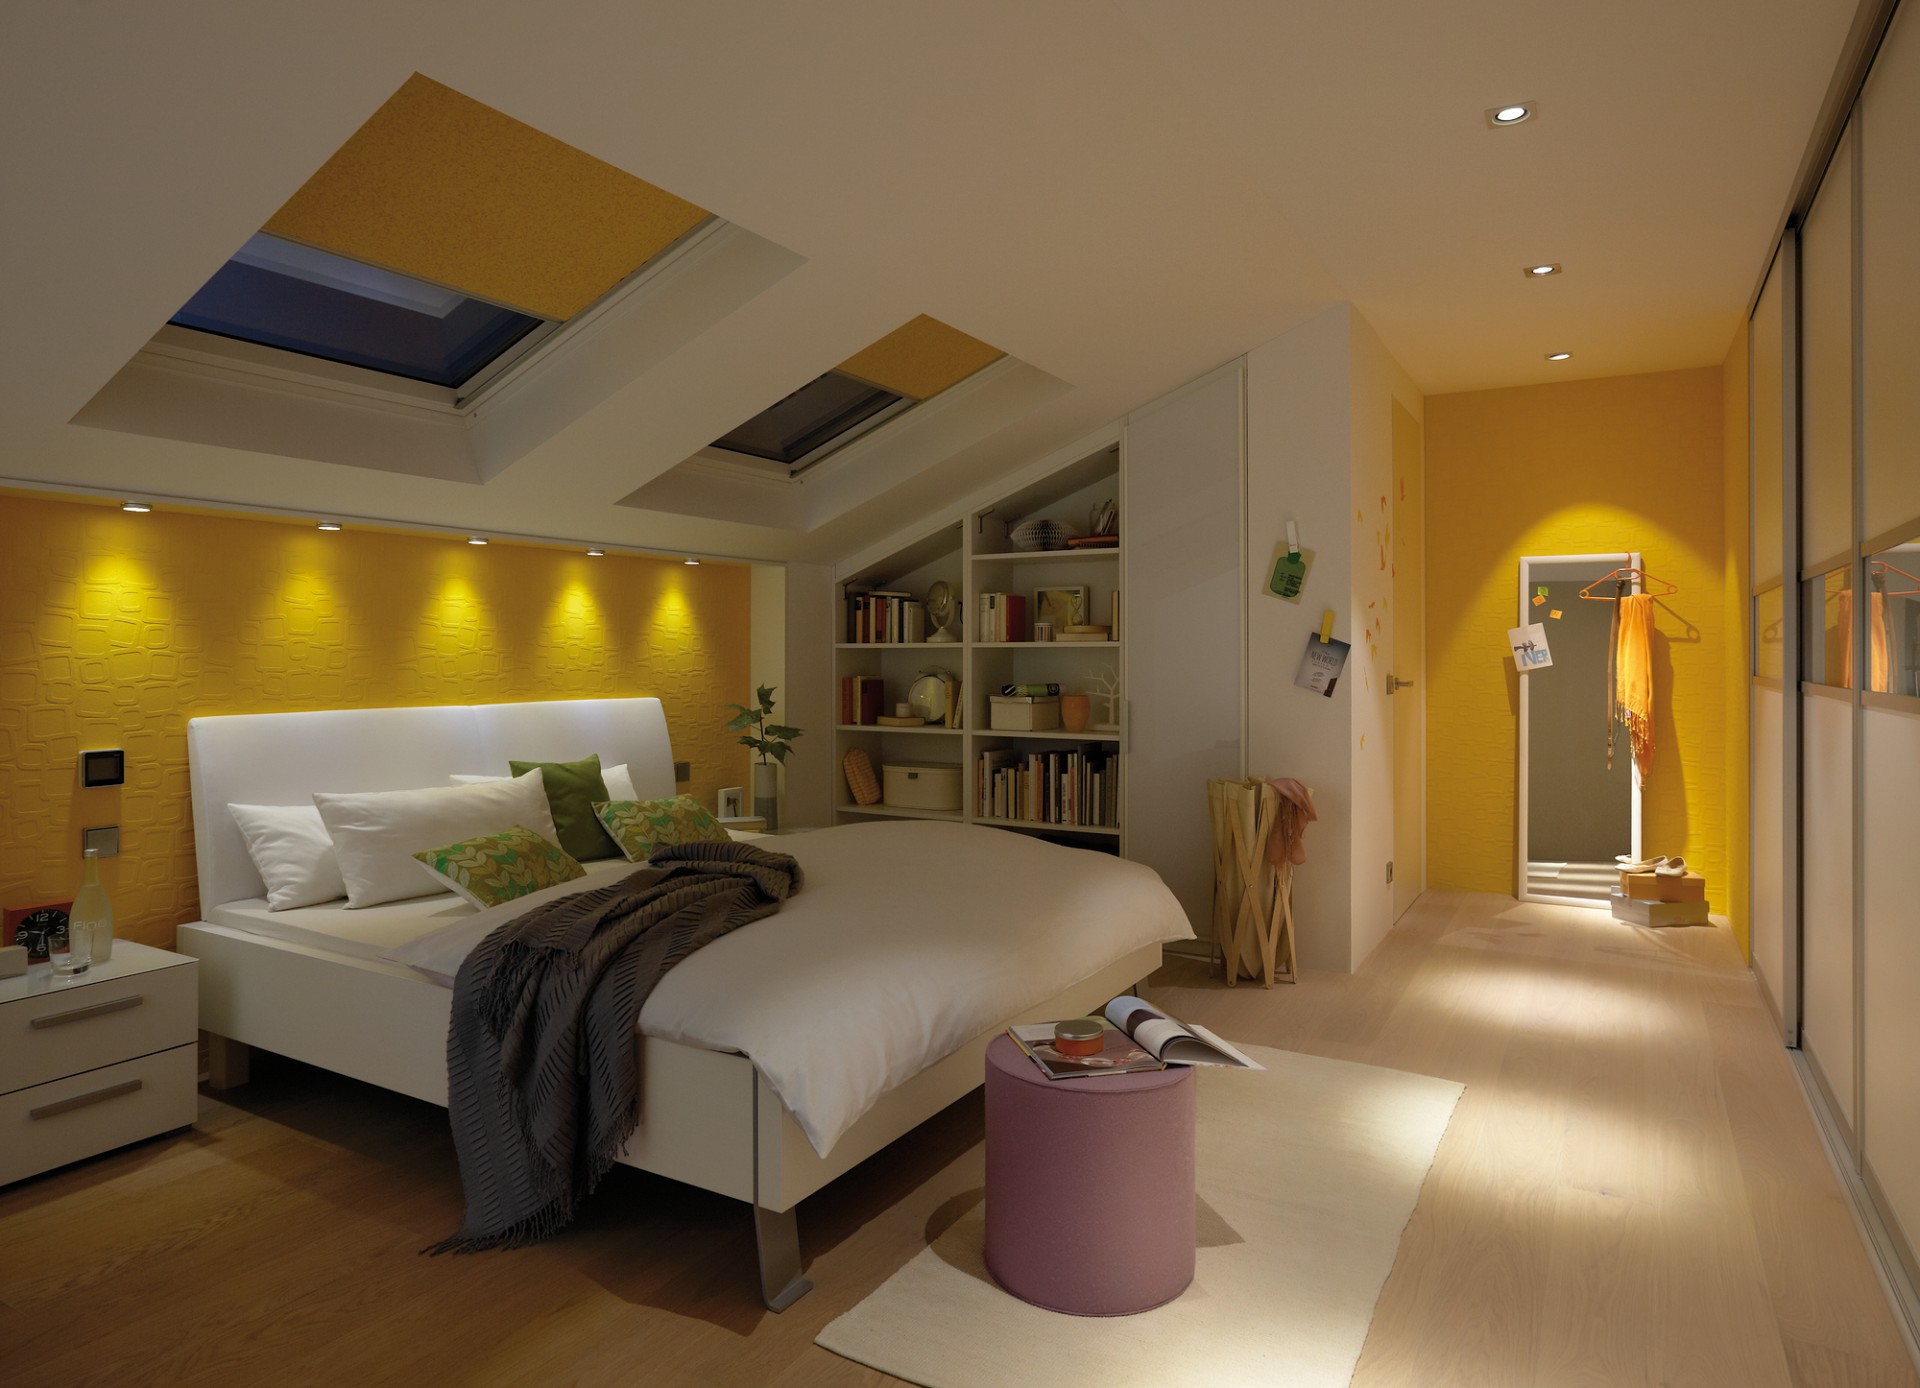 Licht im Schlafzimmer - Raumgestaltung - Architektur - Licht, Design